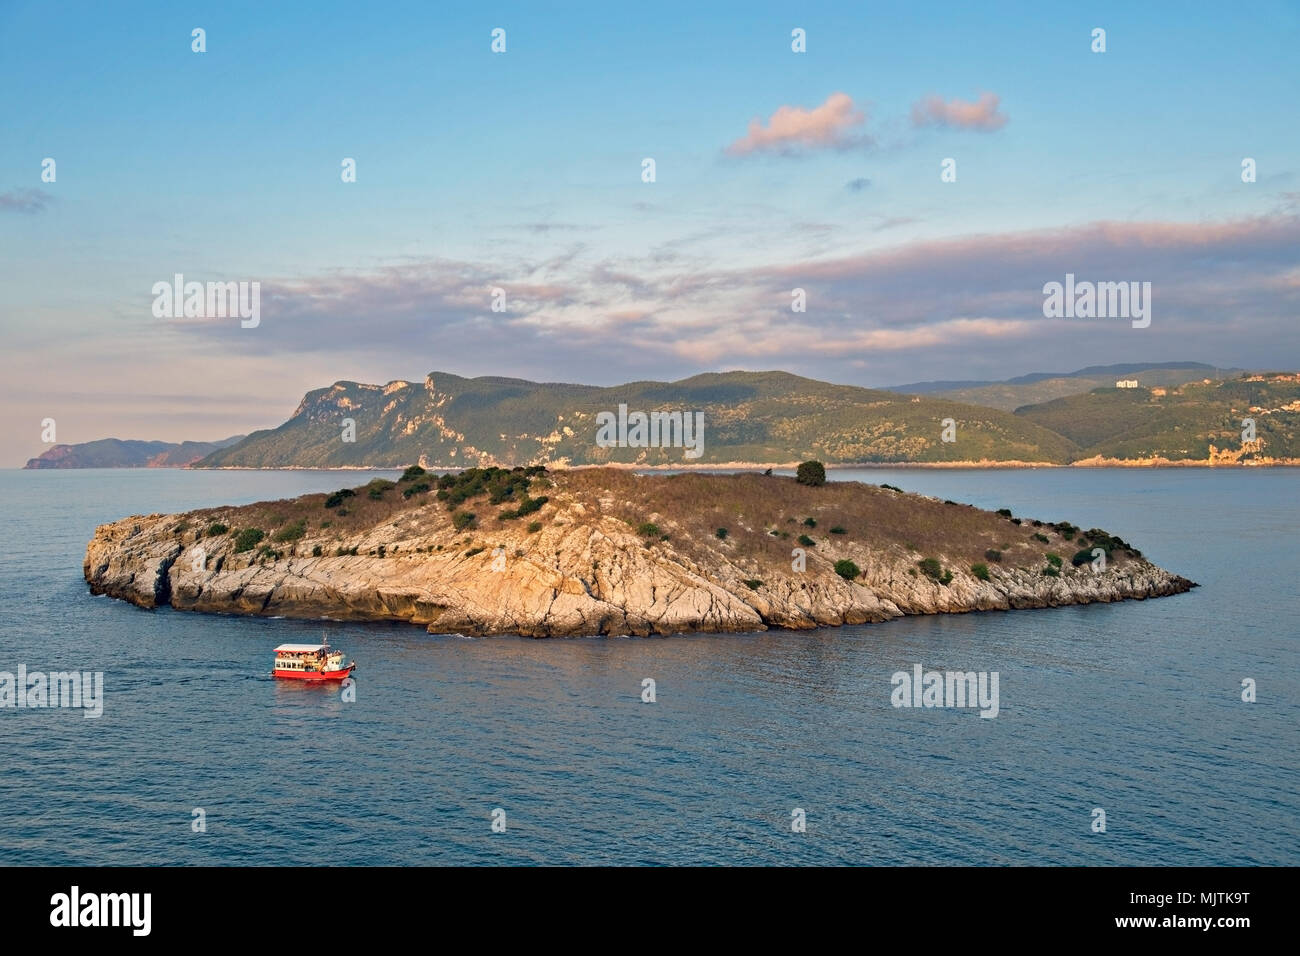 Amasra ,tavsan Island sur la côte de la Mer Noire en Turquie Banque D'Images